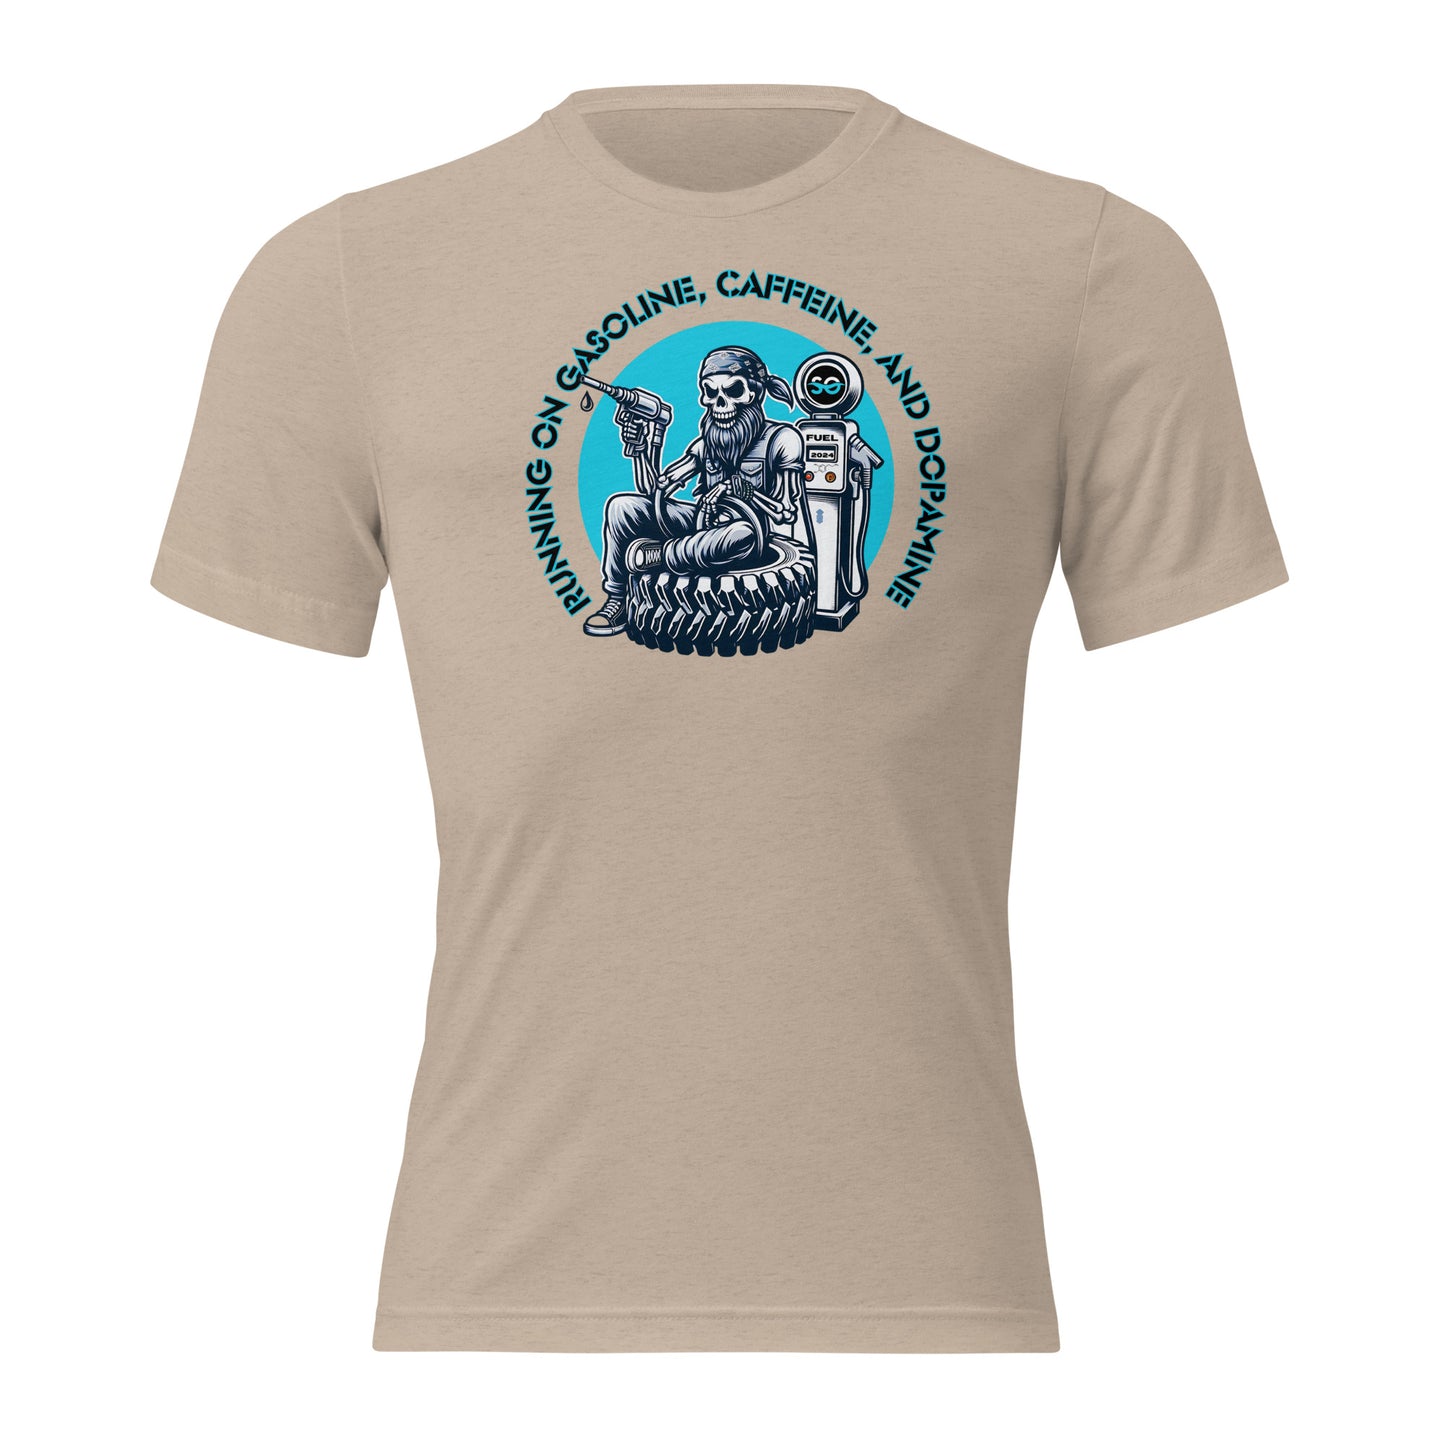 a women's t - shirt with a picture of a man on a motorcycle